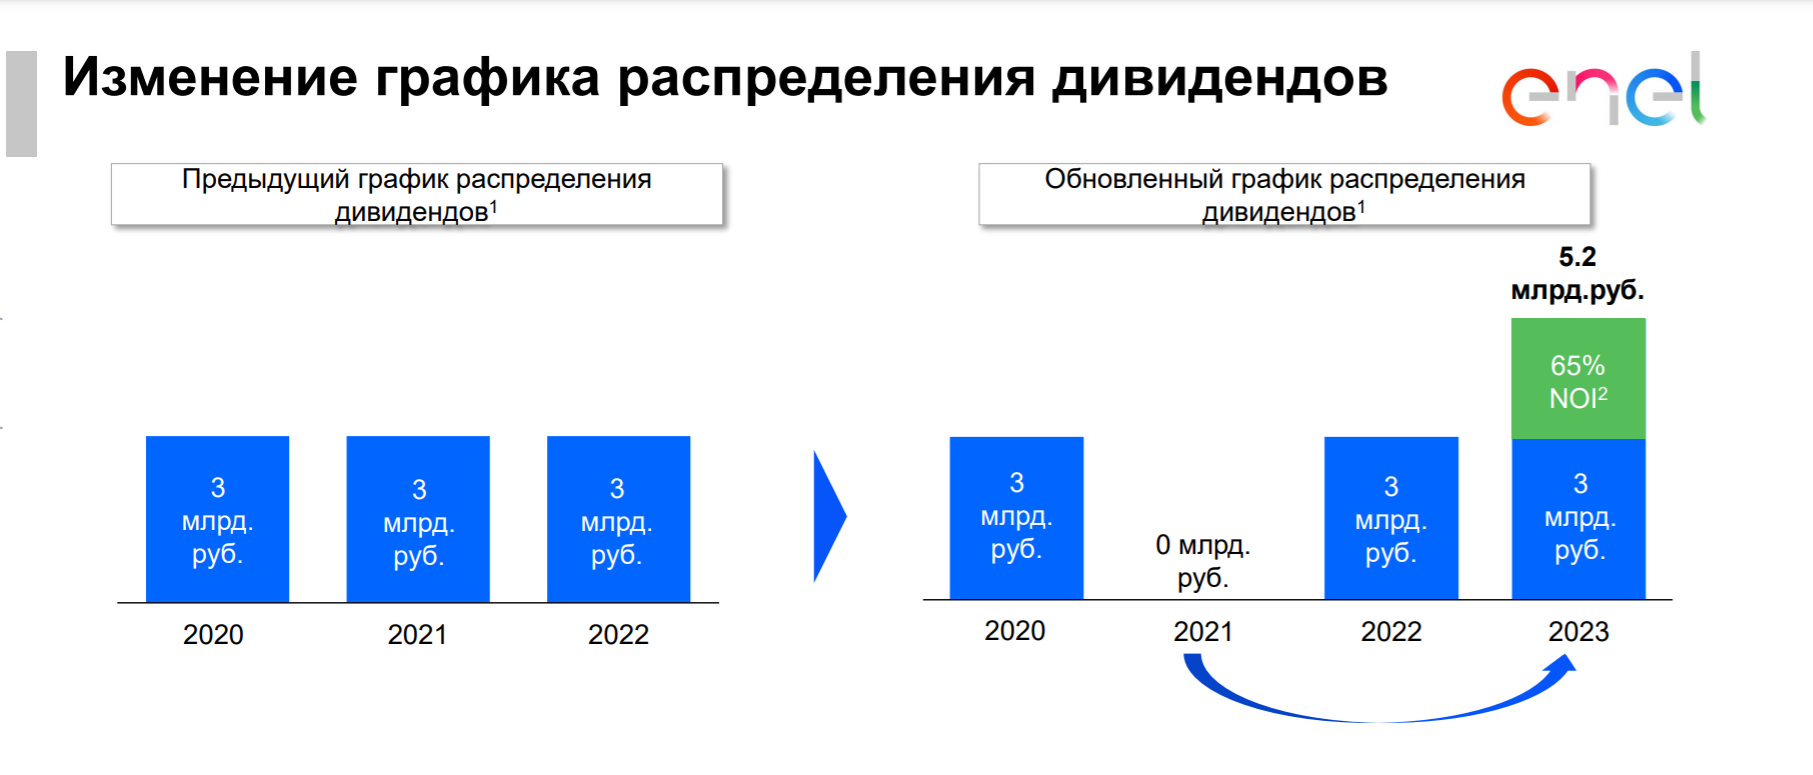 Переносы в россии 2020